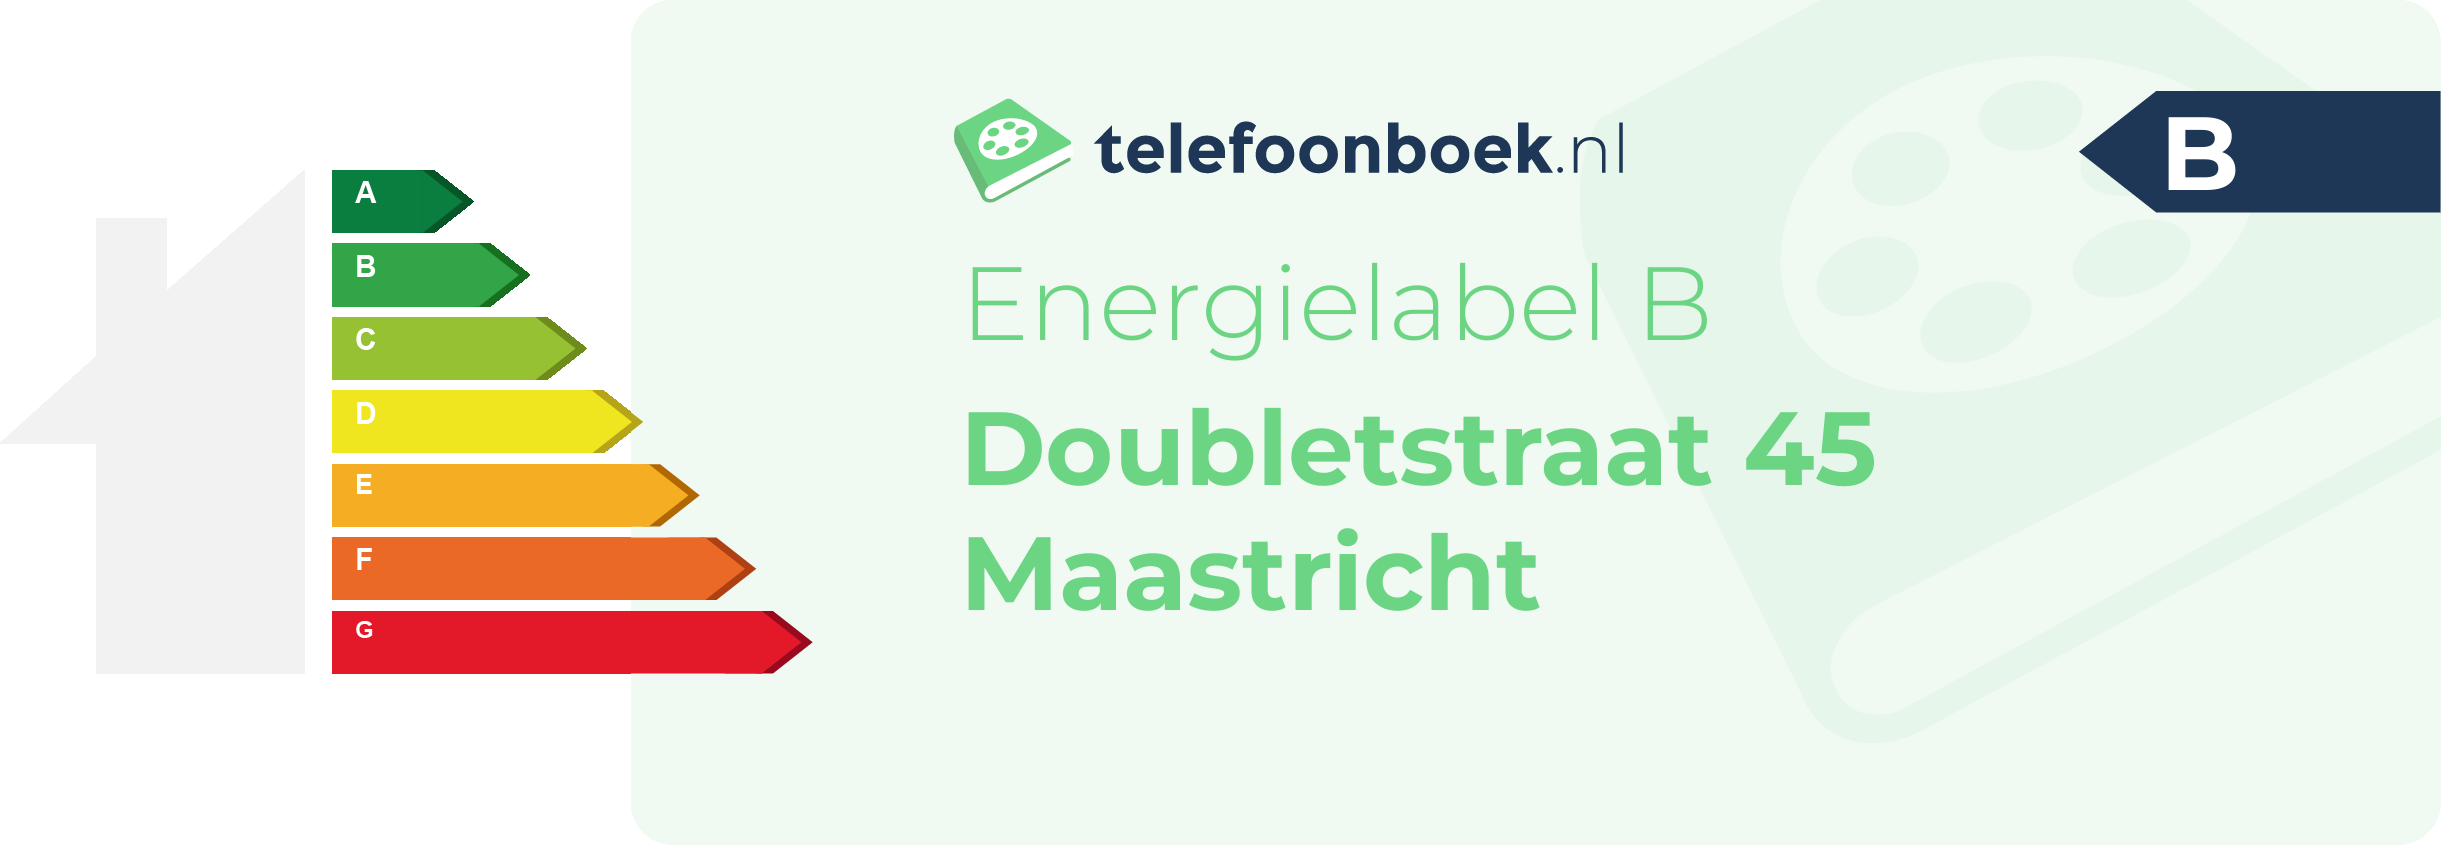 Energielabel Doubletstraat 45 Maastricht